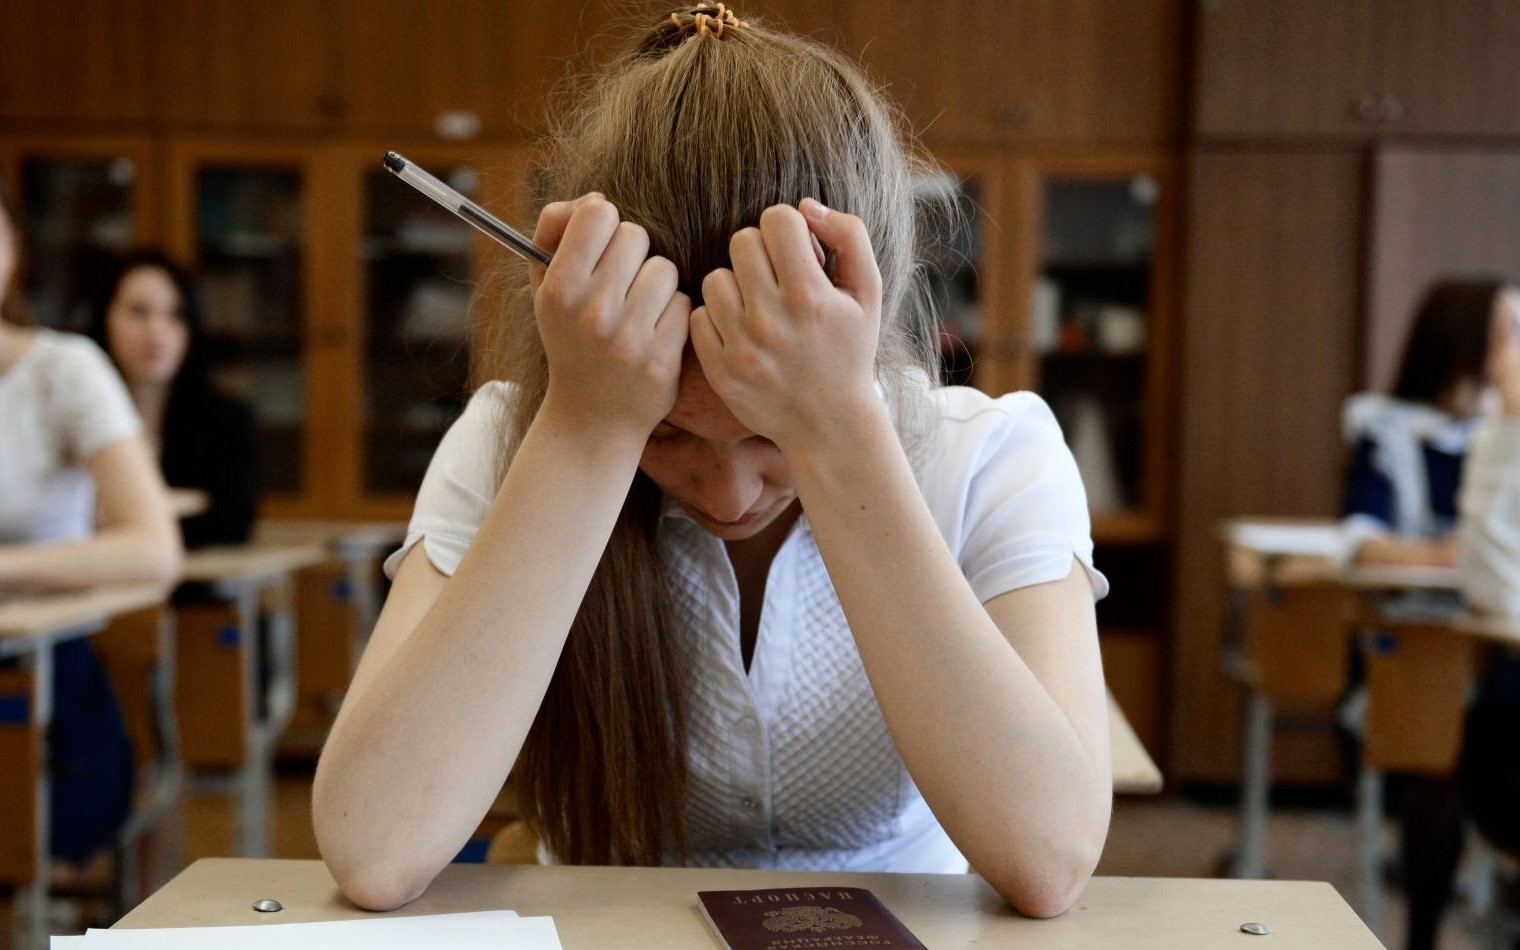  Российские школьники первые в мире по стрессу из-за успеваемости